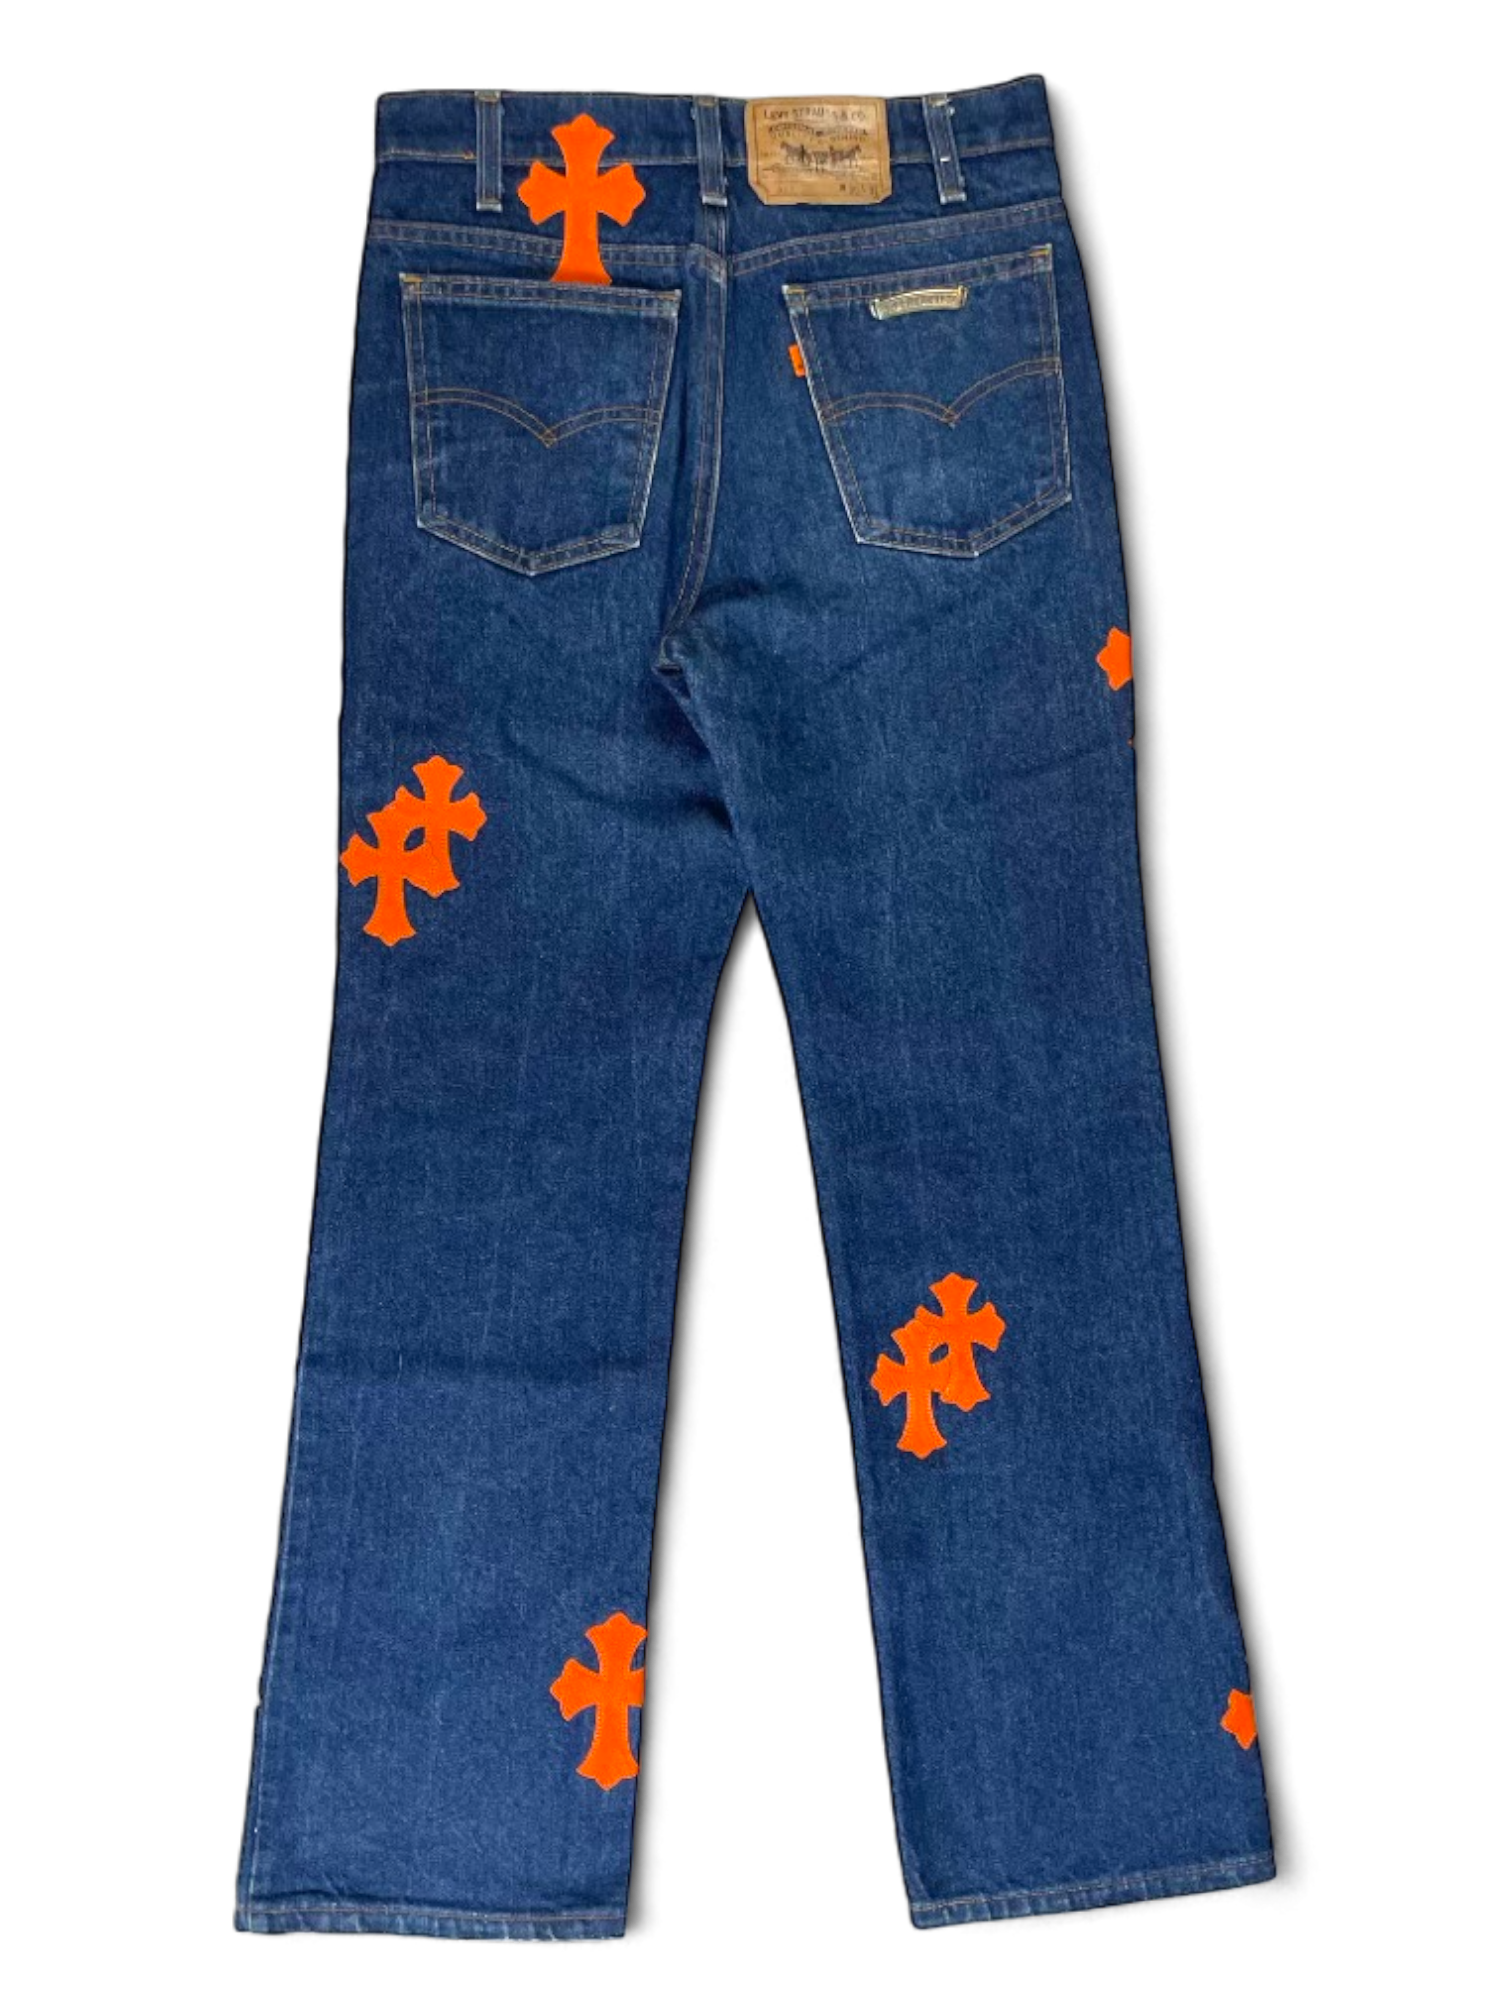 Chrome Hearts 1/1 Art Basel Exclusive Orange Cross Patch Levi’s Denim Jeans